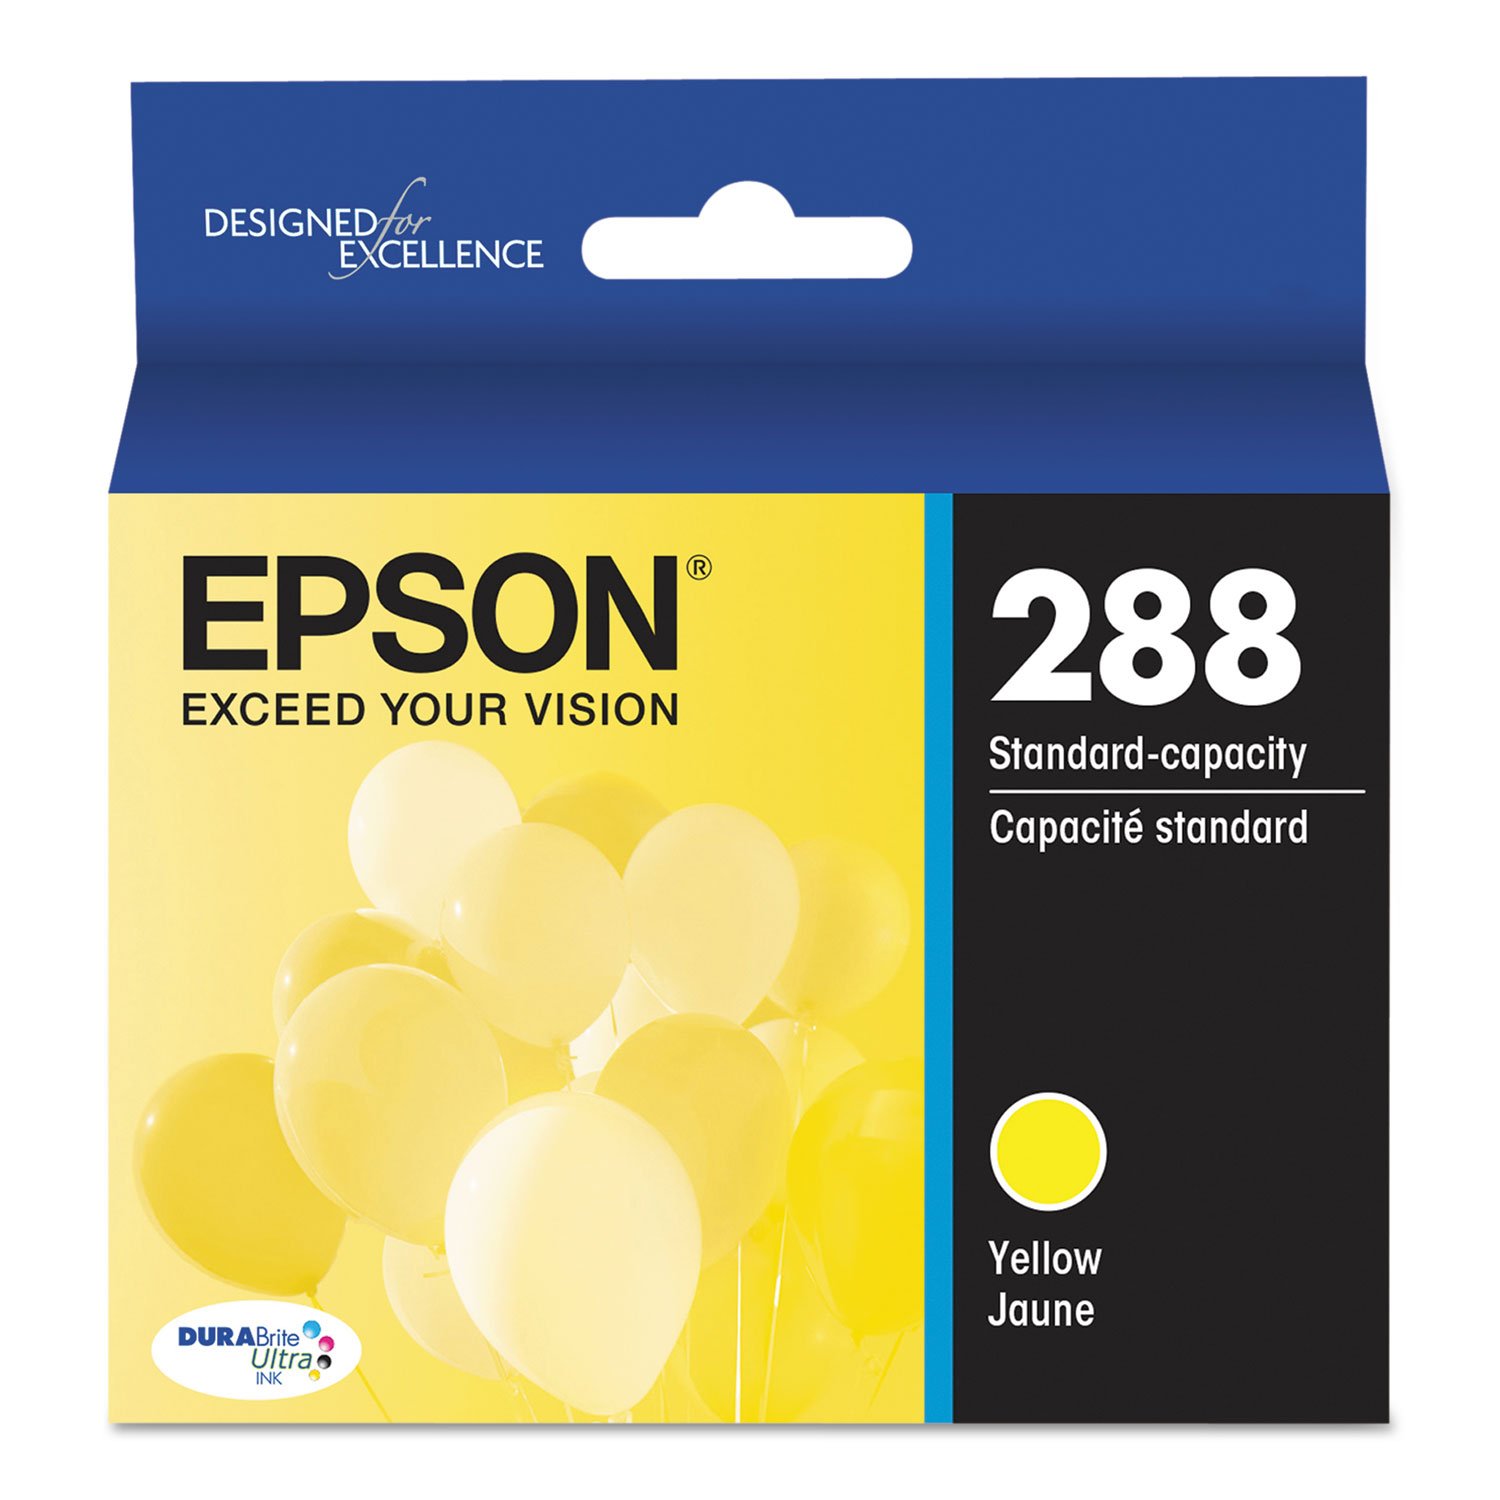 Absolute Toner Epson 288 Original Genuine OEM Yellow Ink Cartridge | T288420S Original Epson Cartridge